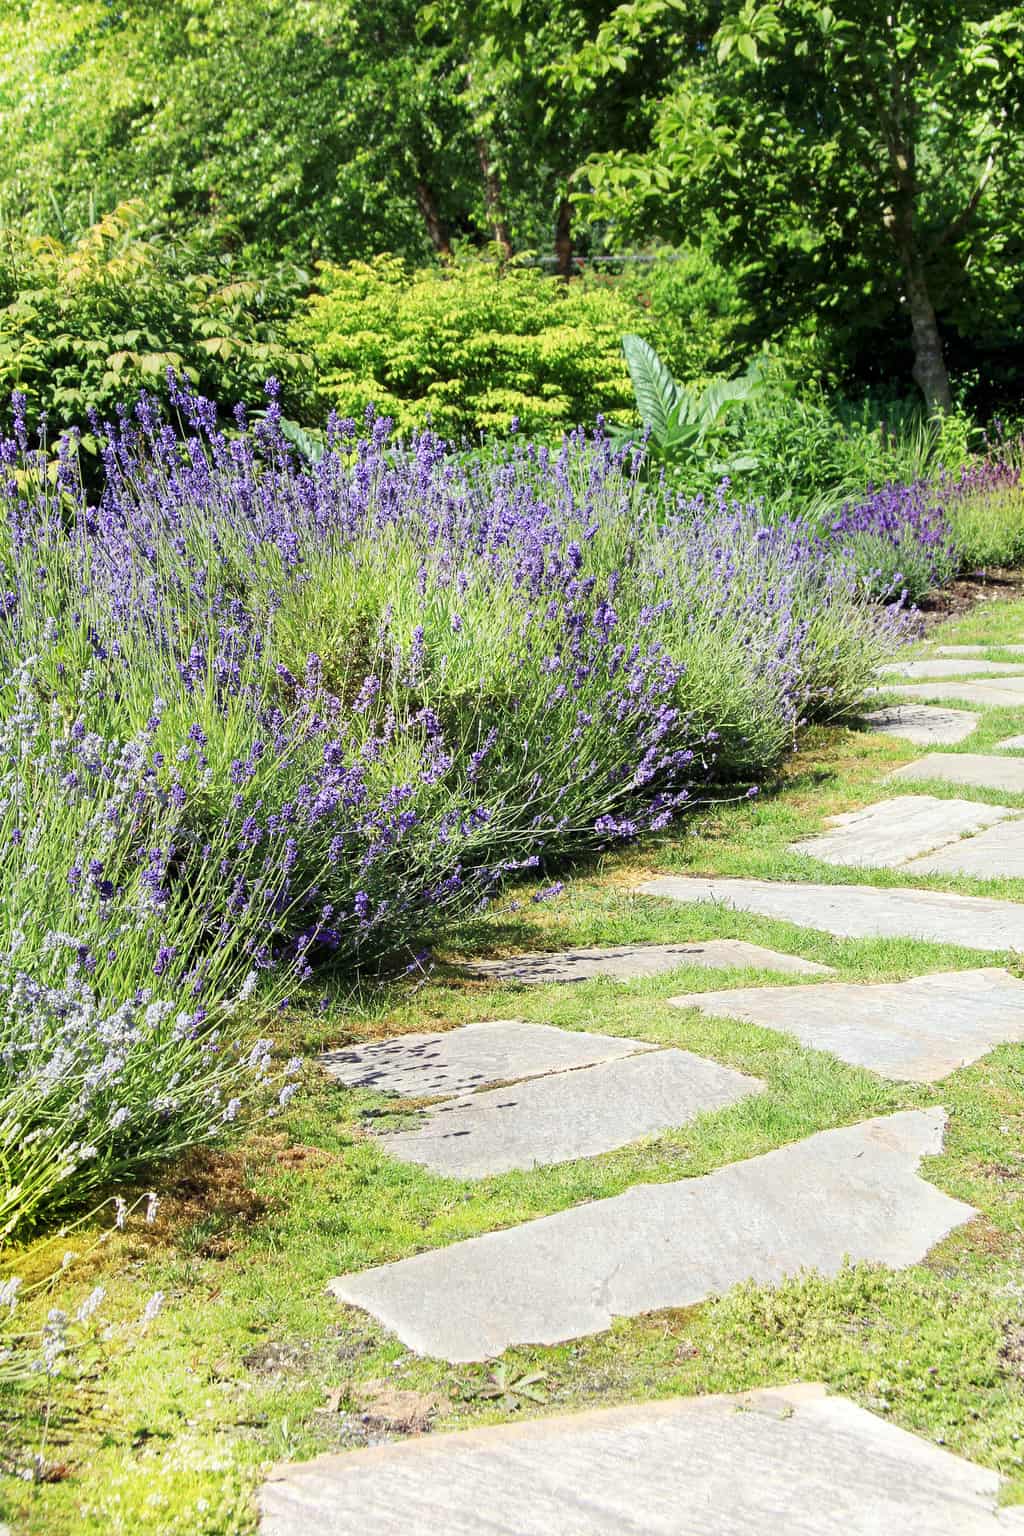 lavender growing outdoors along a garden path